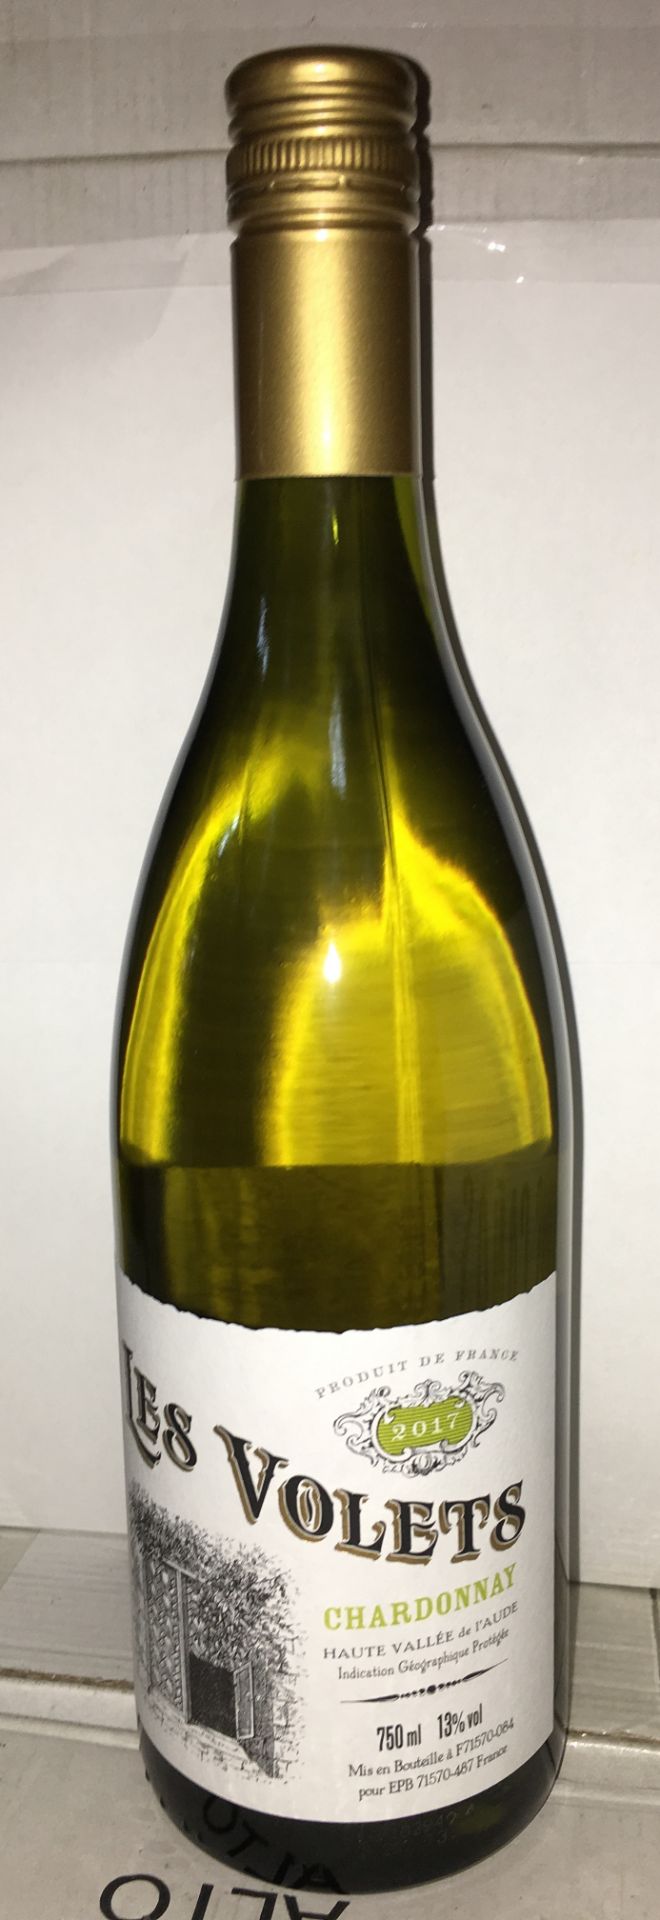 12 x 75cl Bottles Of Les Volets Chardonnay 2018 Haut Vallee de L'Aude | RRP £9.99 per bottle